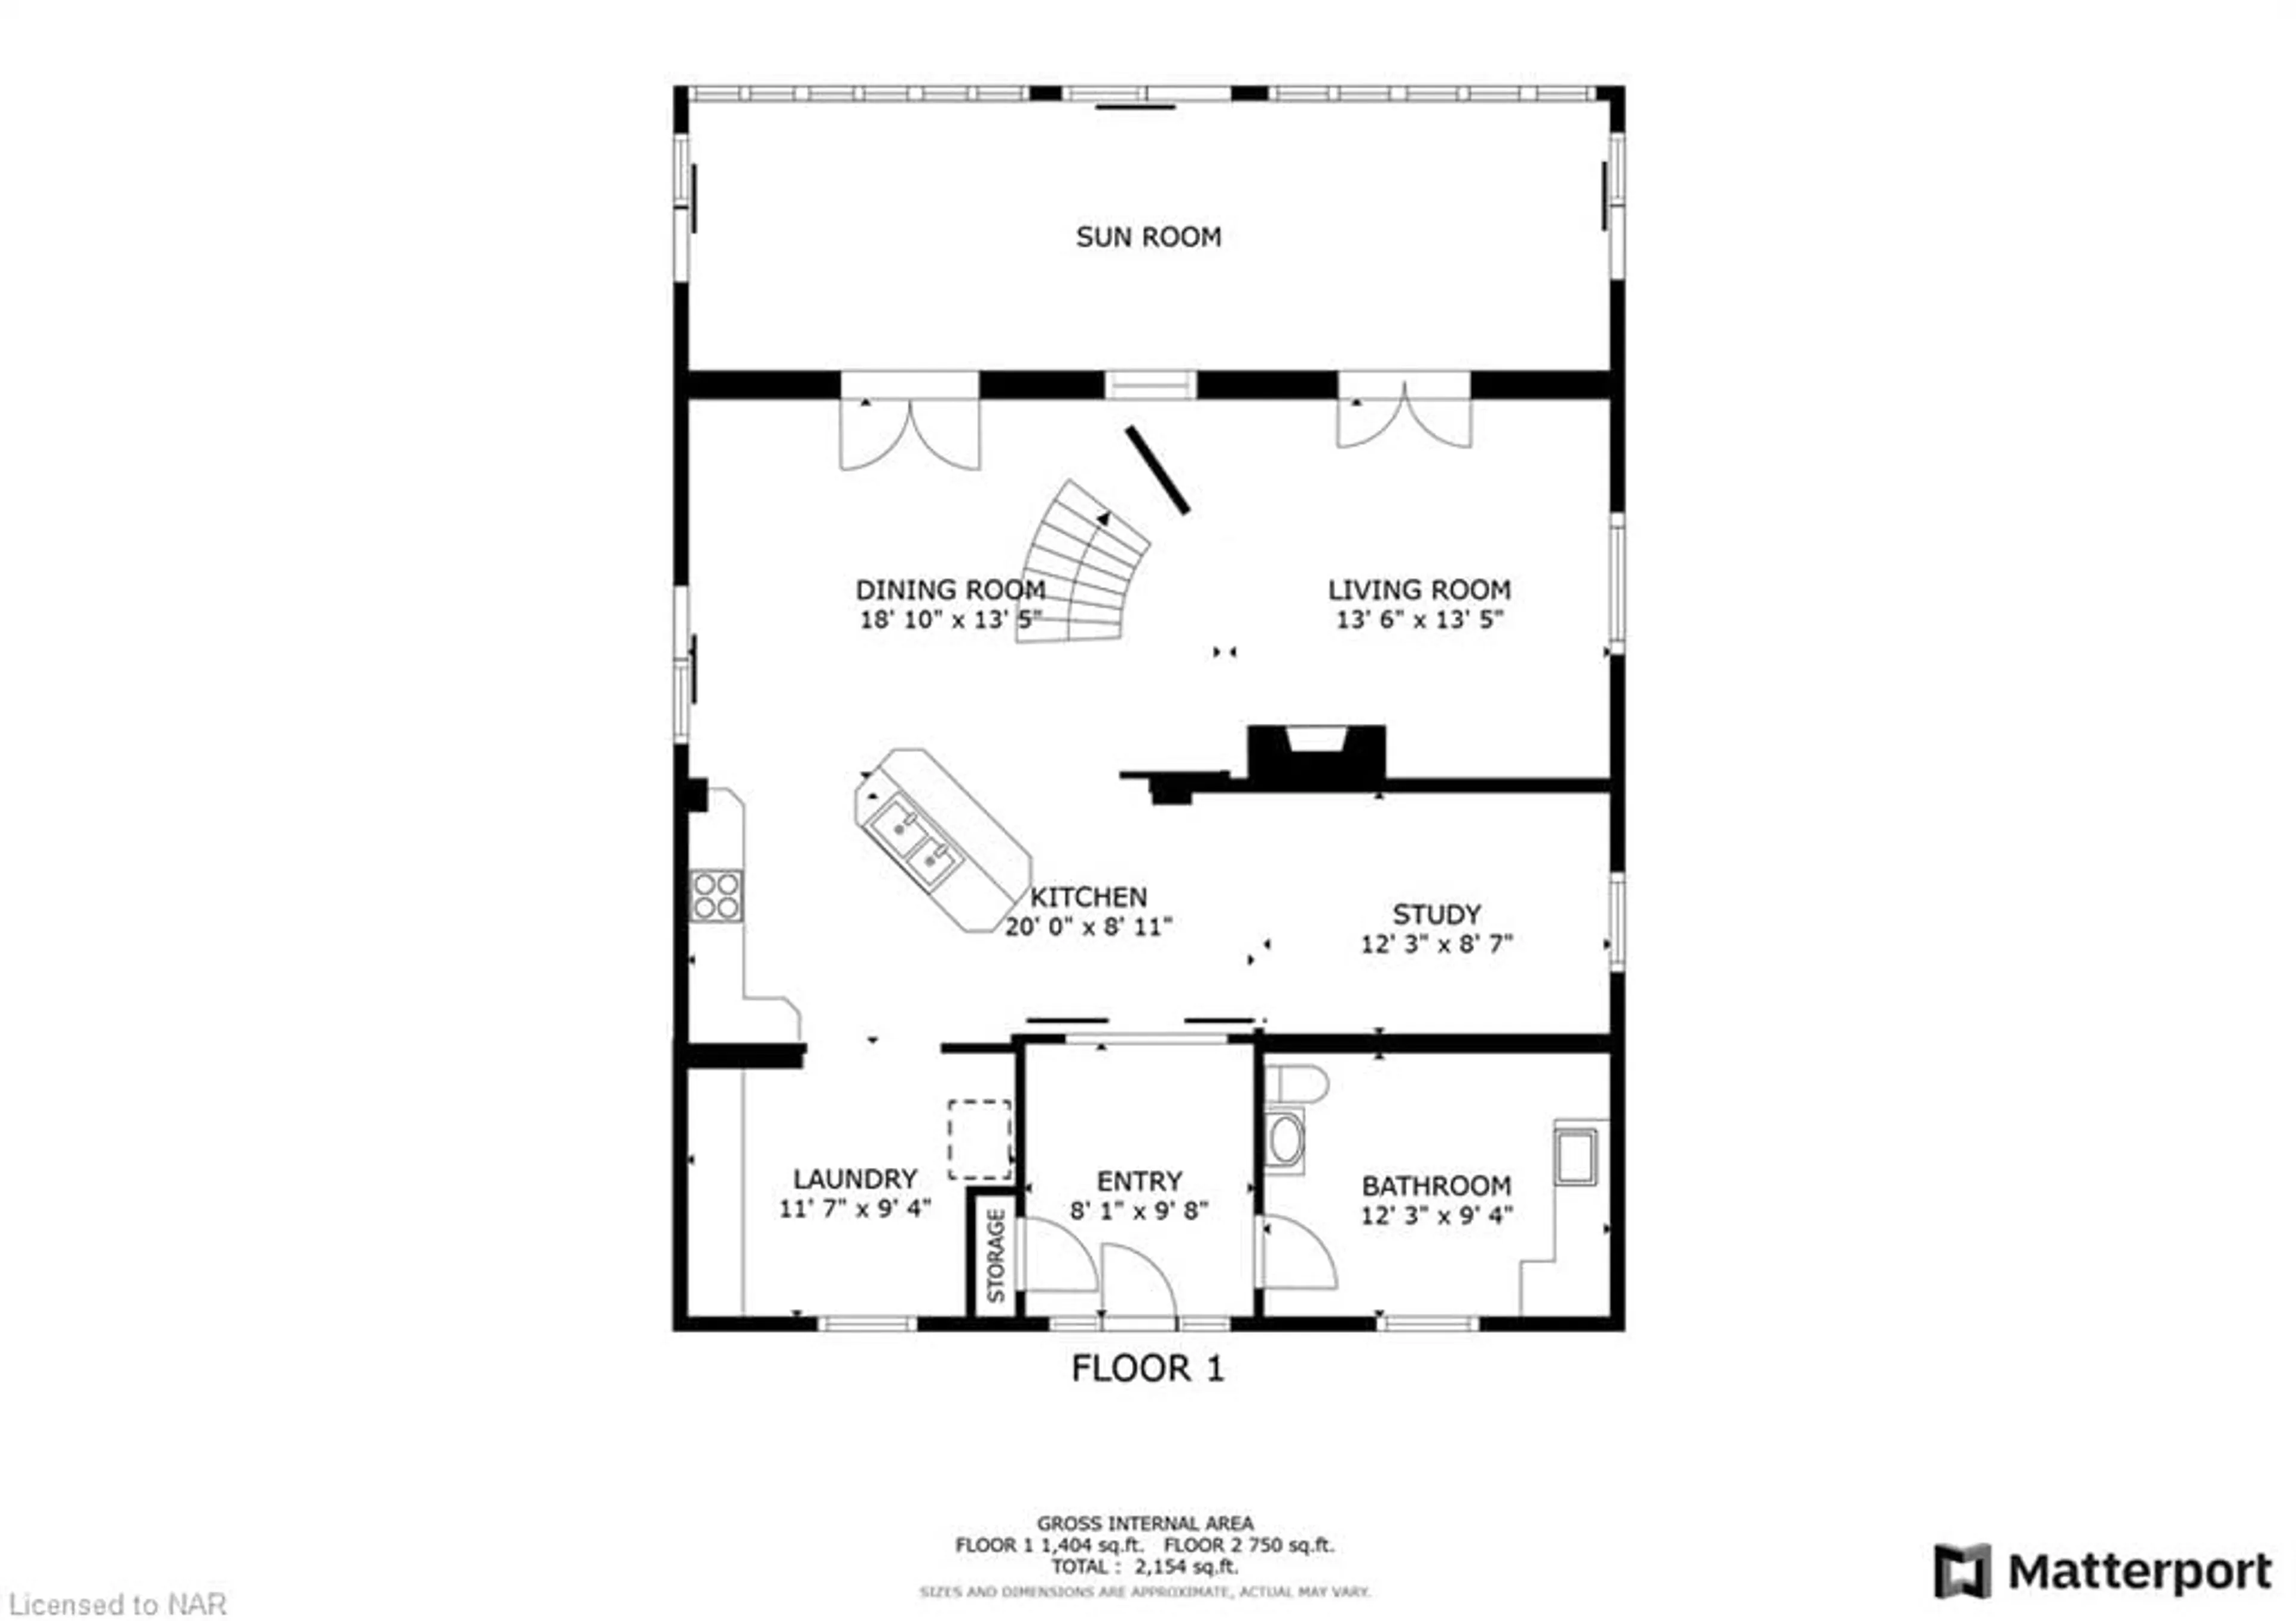 Floor plan for 11825 Lakeshore Rd, Wainfleet Ontario L0S 1V0